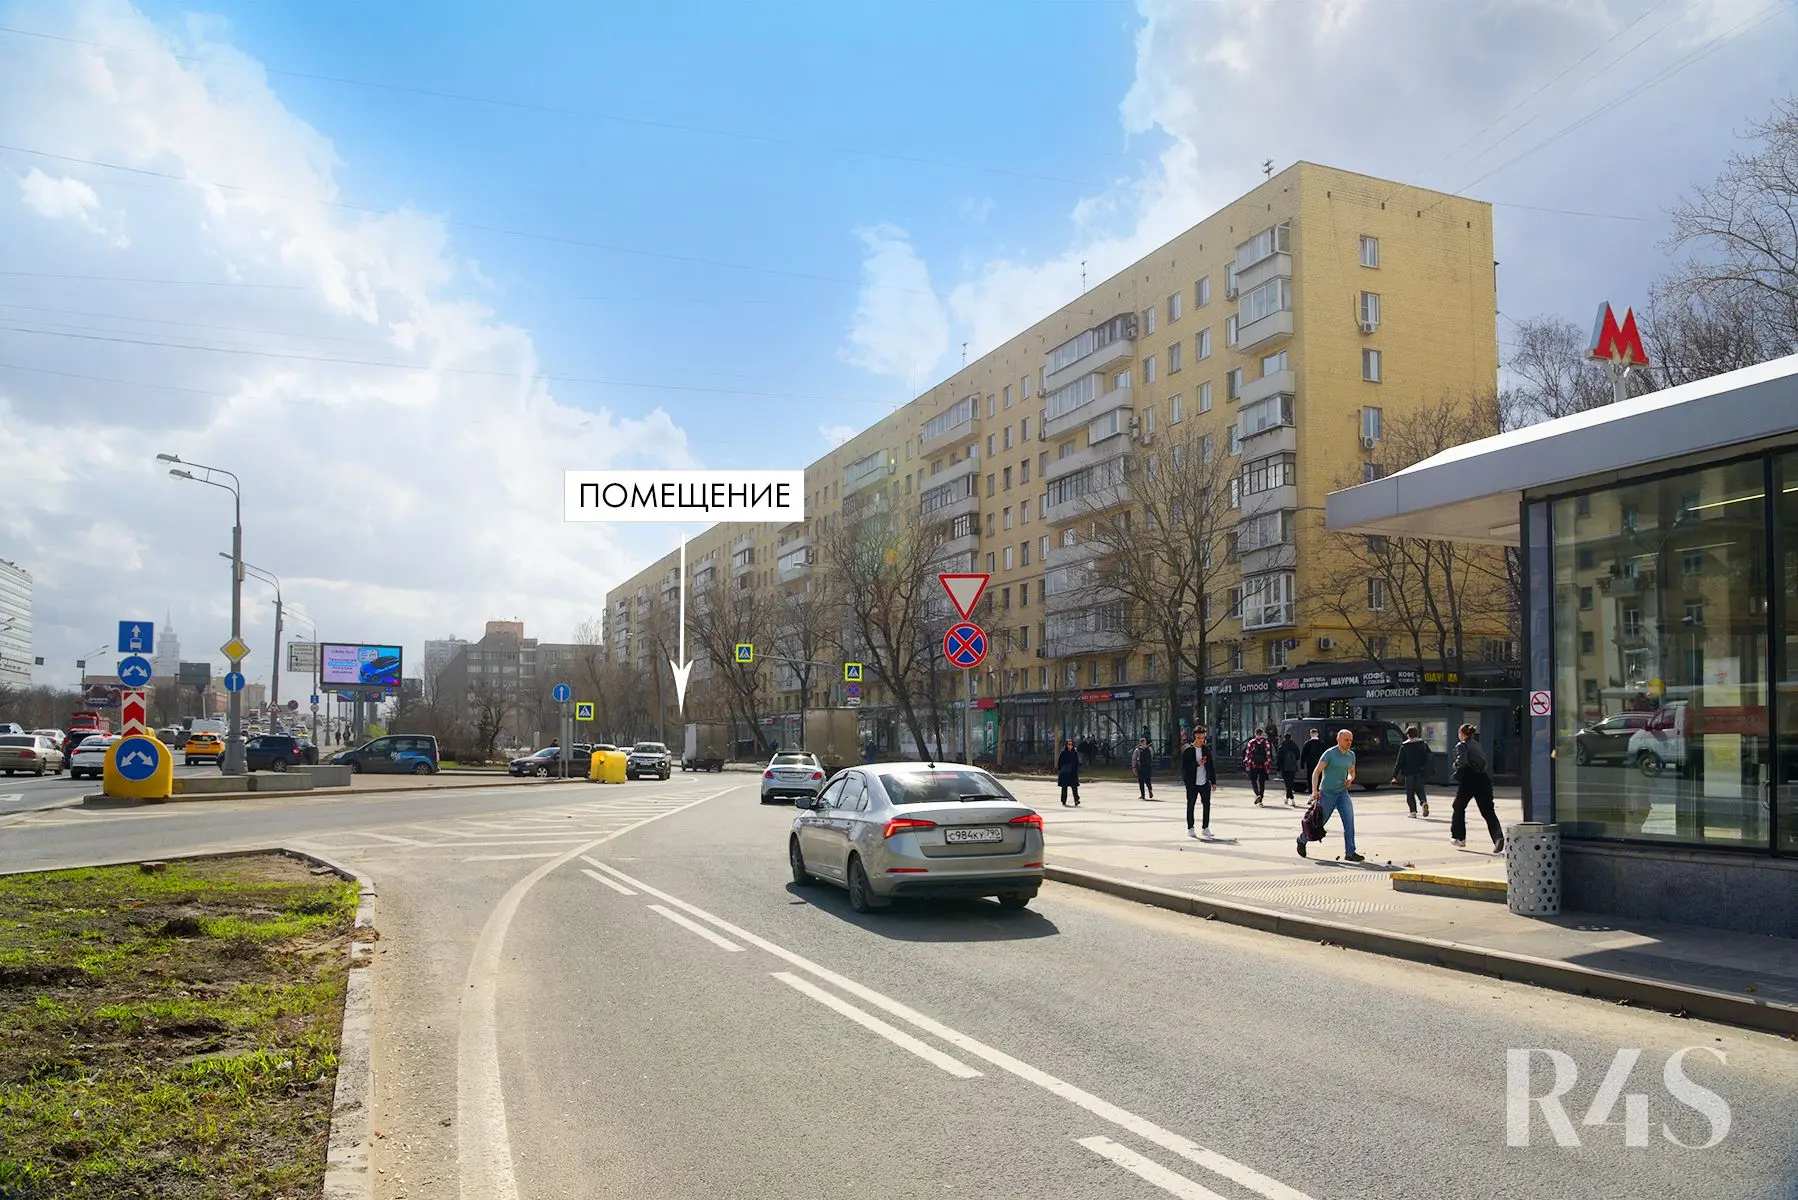 Аренда торговых помещений площадью 8 - 129.4 м2 в Москве:  Ленинградское шоссе, 9к1 R4S | Realty4Sale